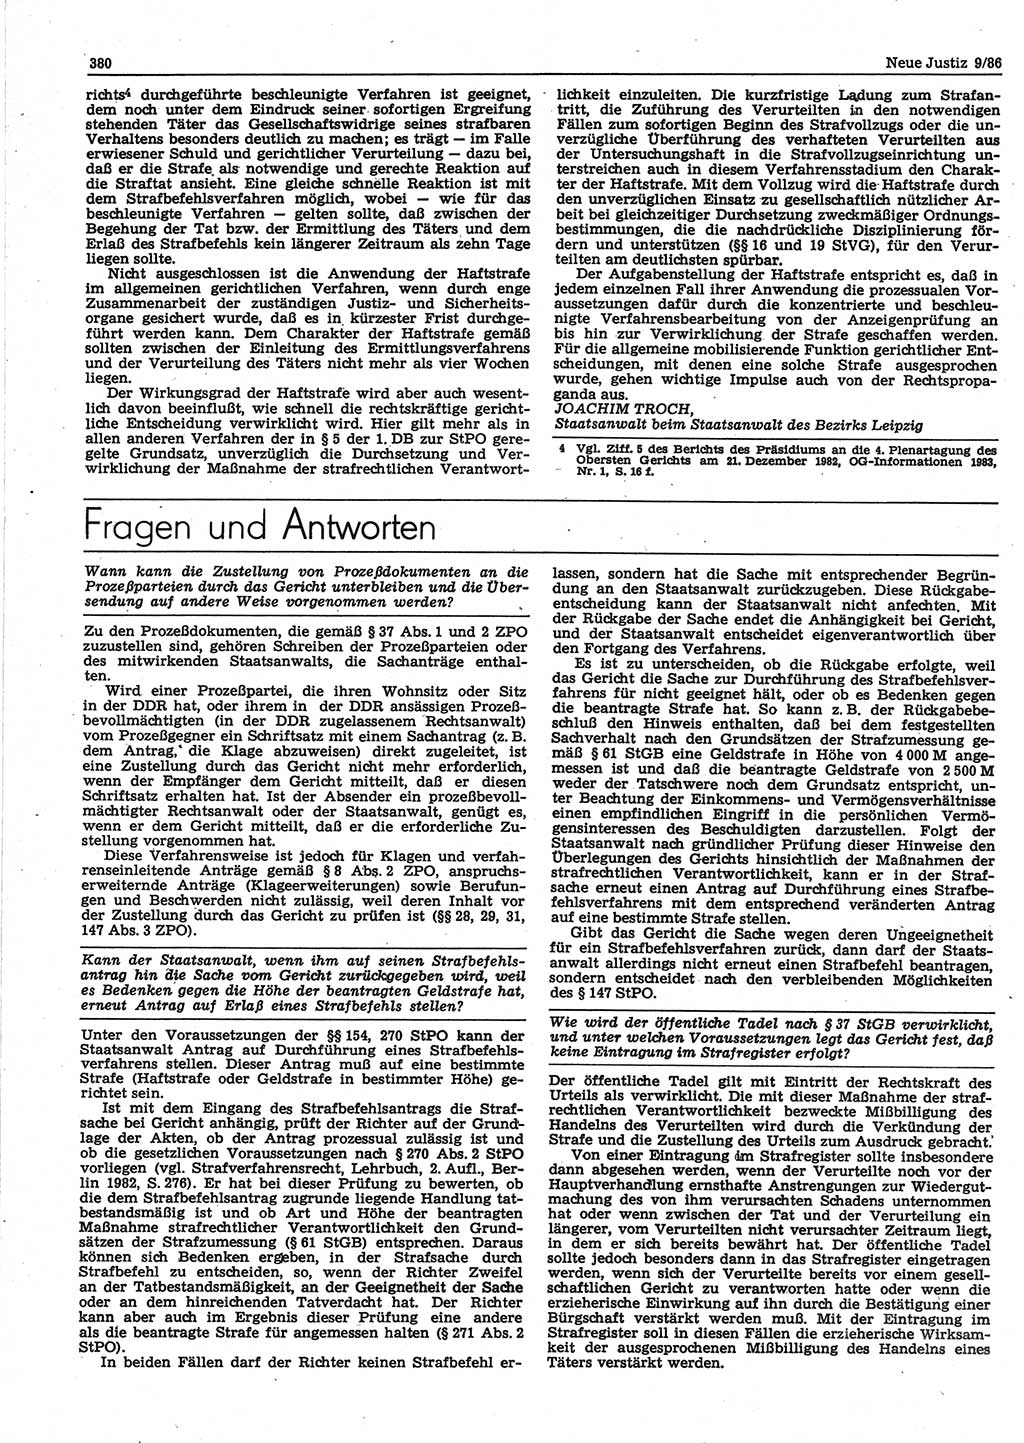 Neue Justiz (NJ), Zeitschrift für sozialistisches Recht und Gesetzlichkeit [Deutsche Demokratische Republik (DDR)], 40. Jahrgang 1986, Seite 380 (NJ DDR 1986, S. 380)